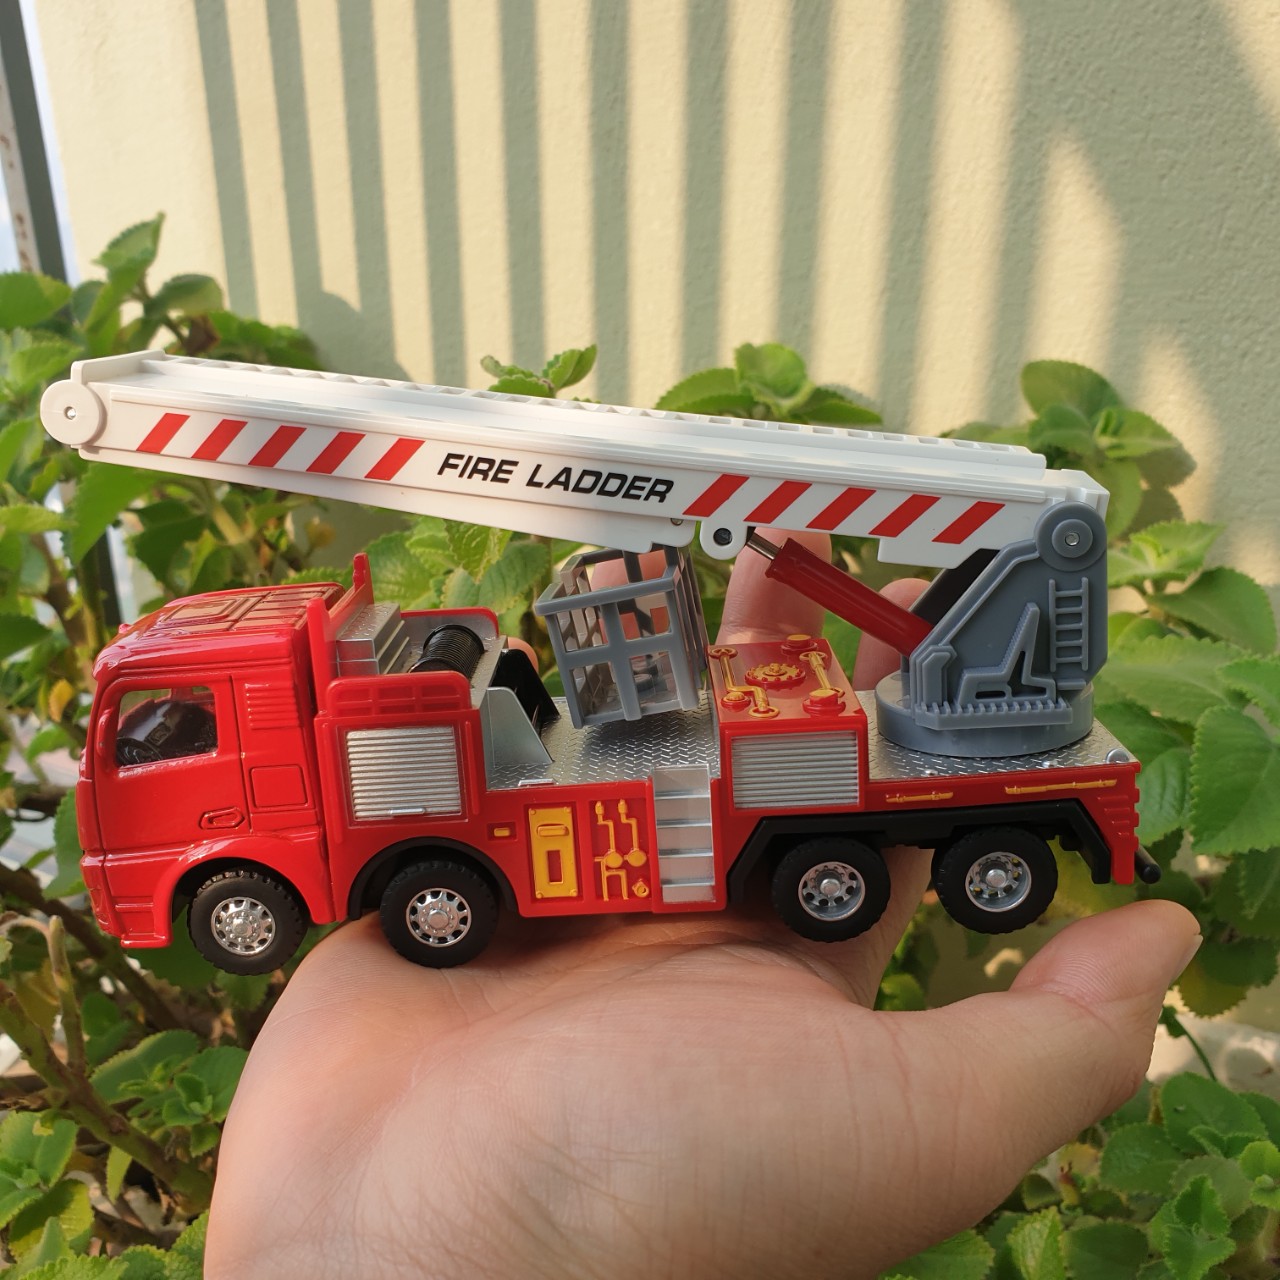 Đồ chơi mô hình xe cứu hỏa thang gập KAVY chất liệu hợp kim và nhựa an toàn , chạy đà rất xa chi tiết sắc sảo